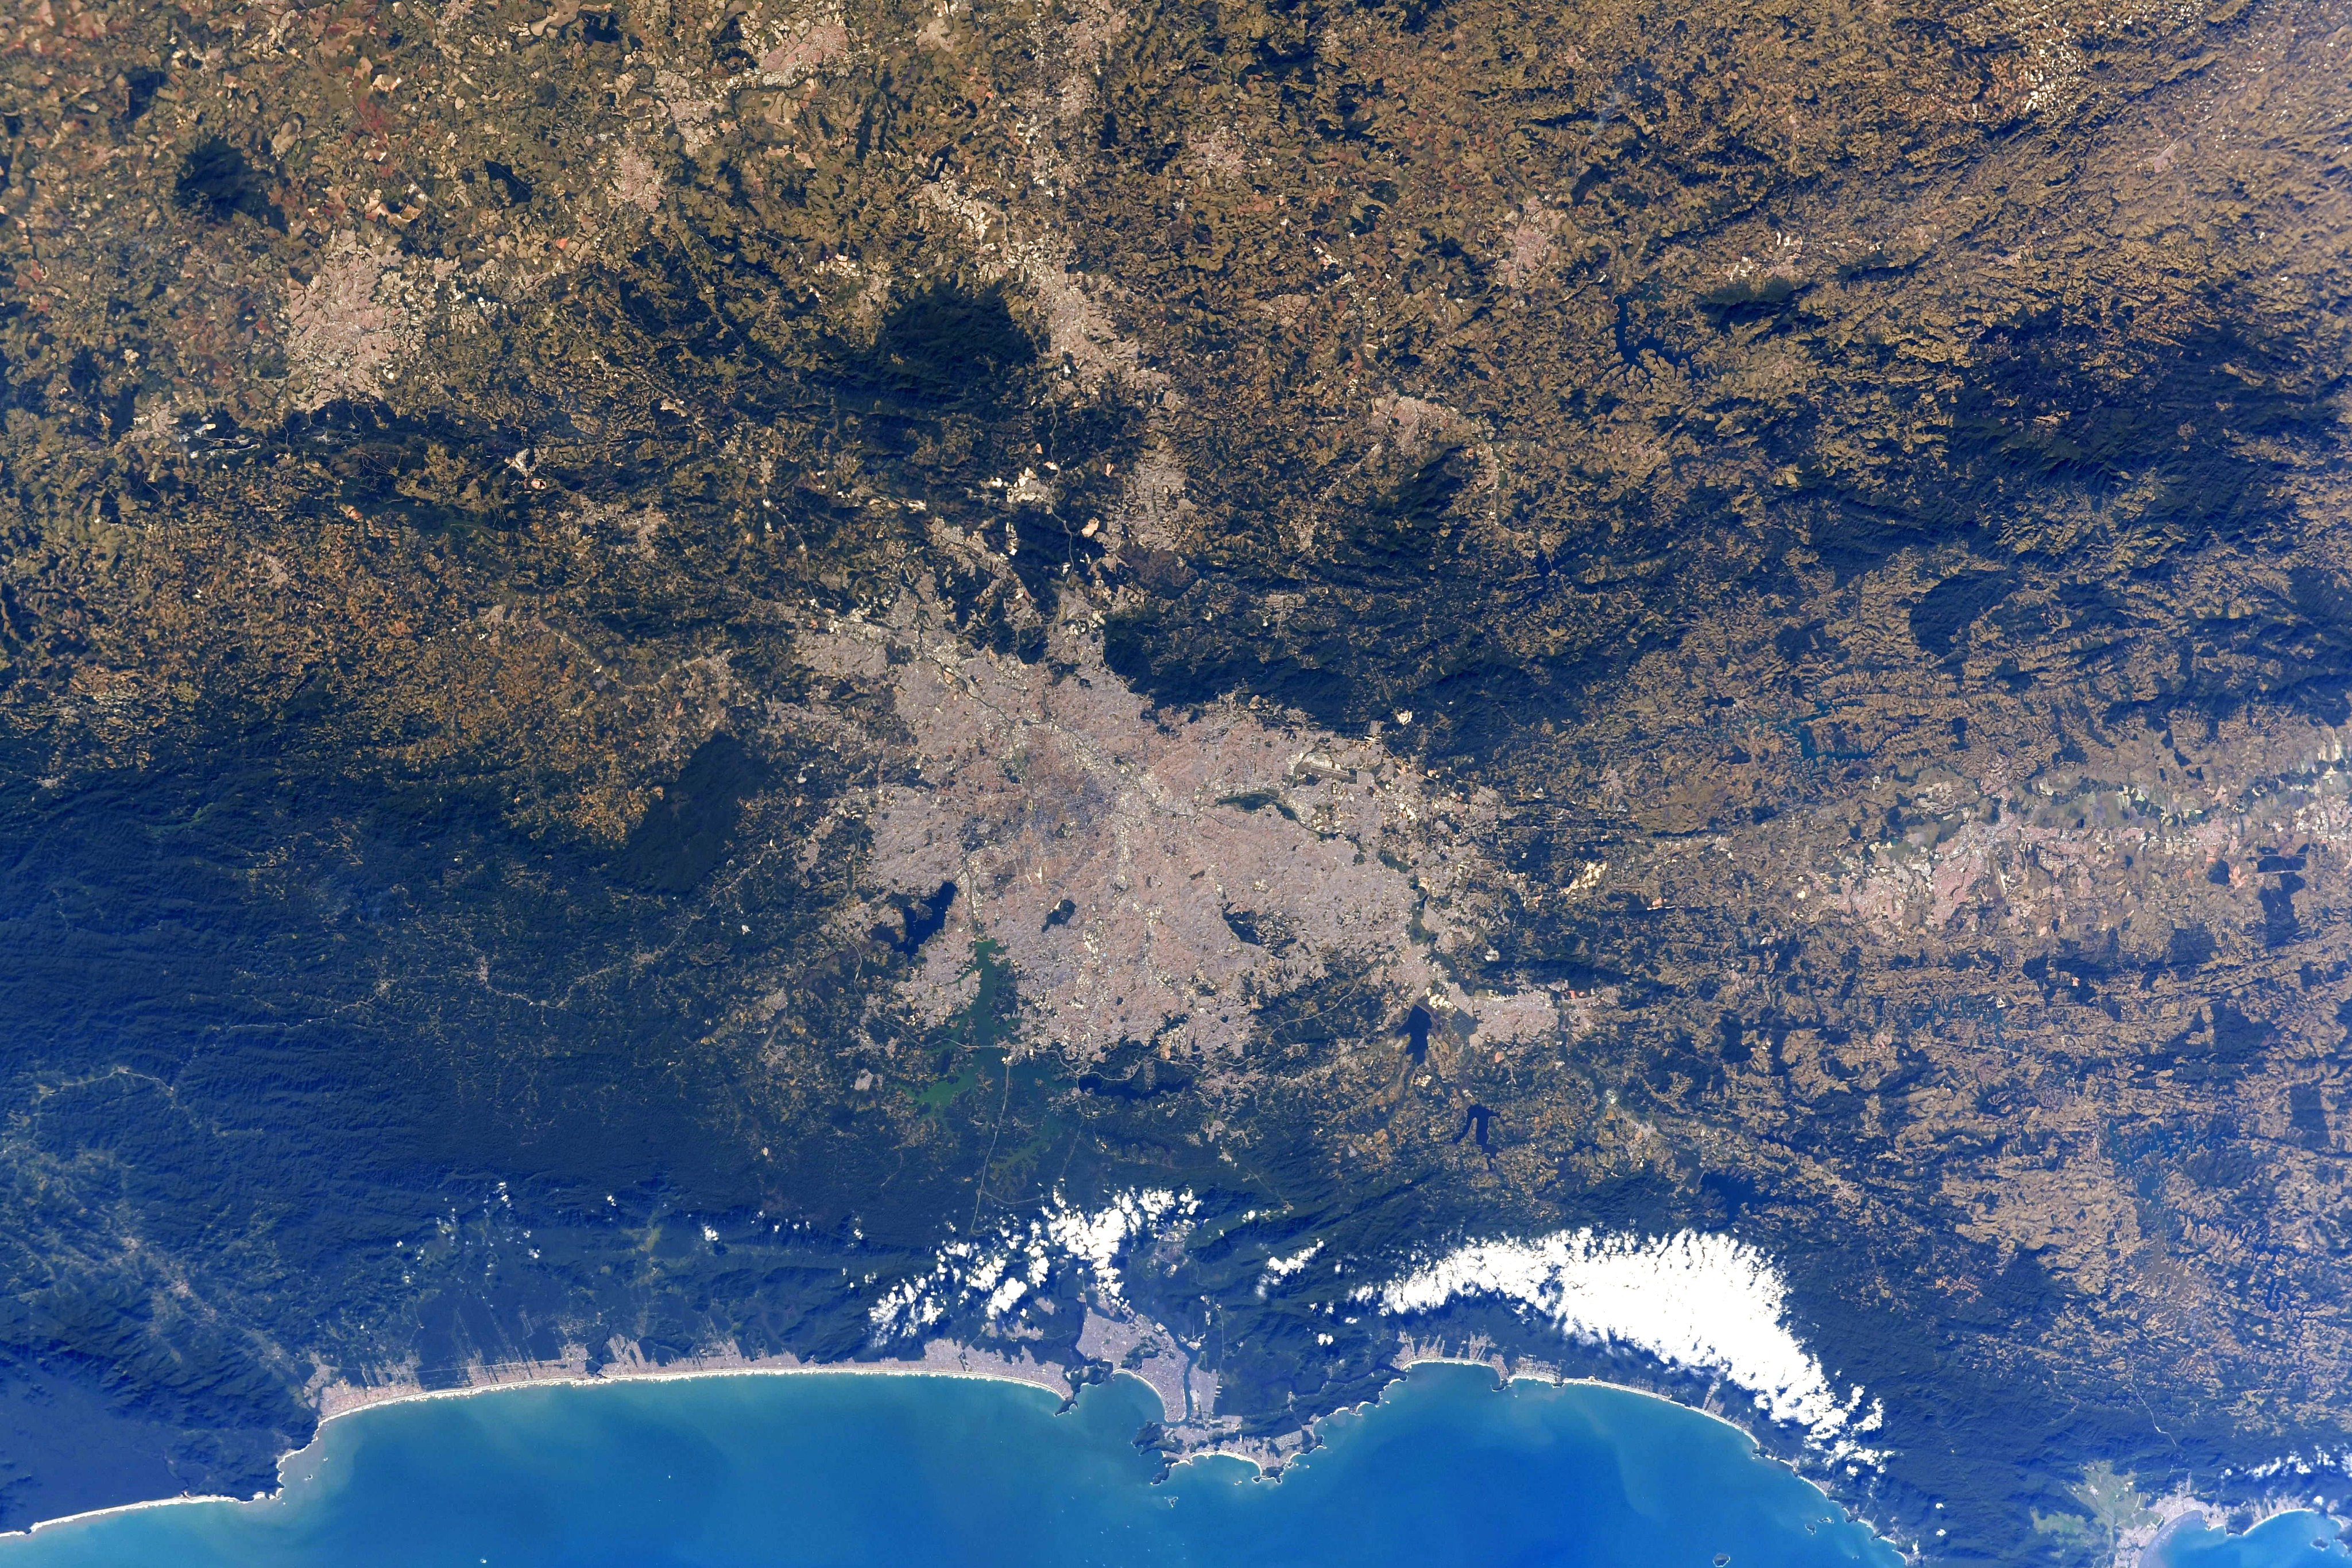 Foto tirada por astronauta da Nasa mostra litoral paulista visto do espaço